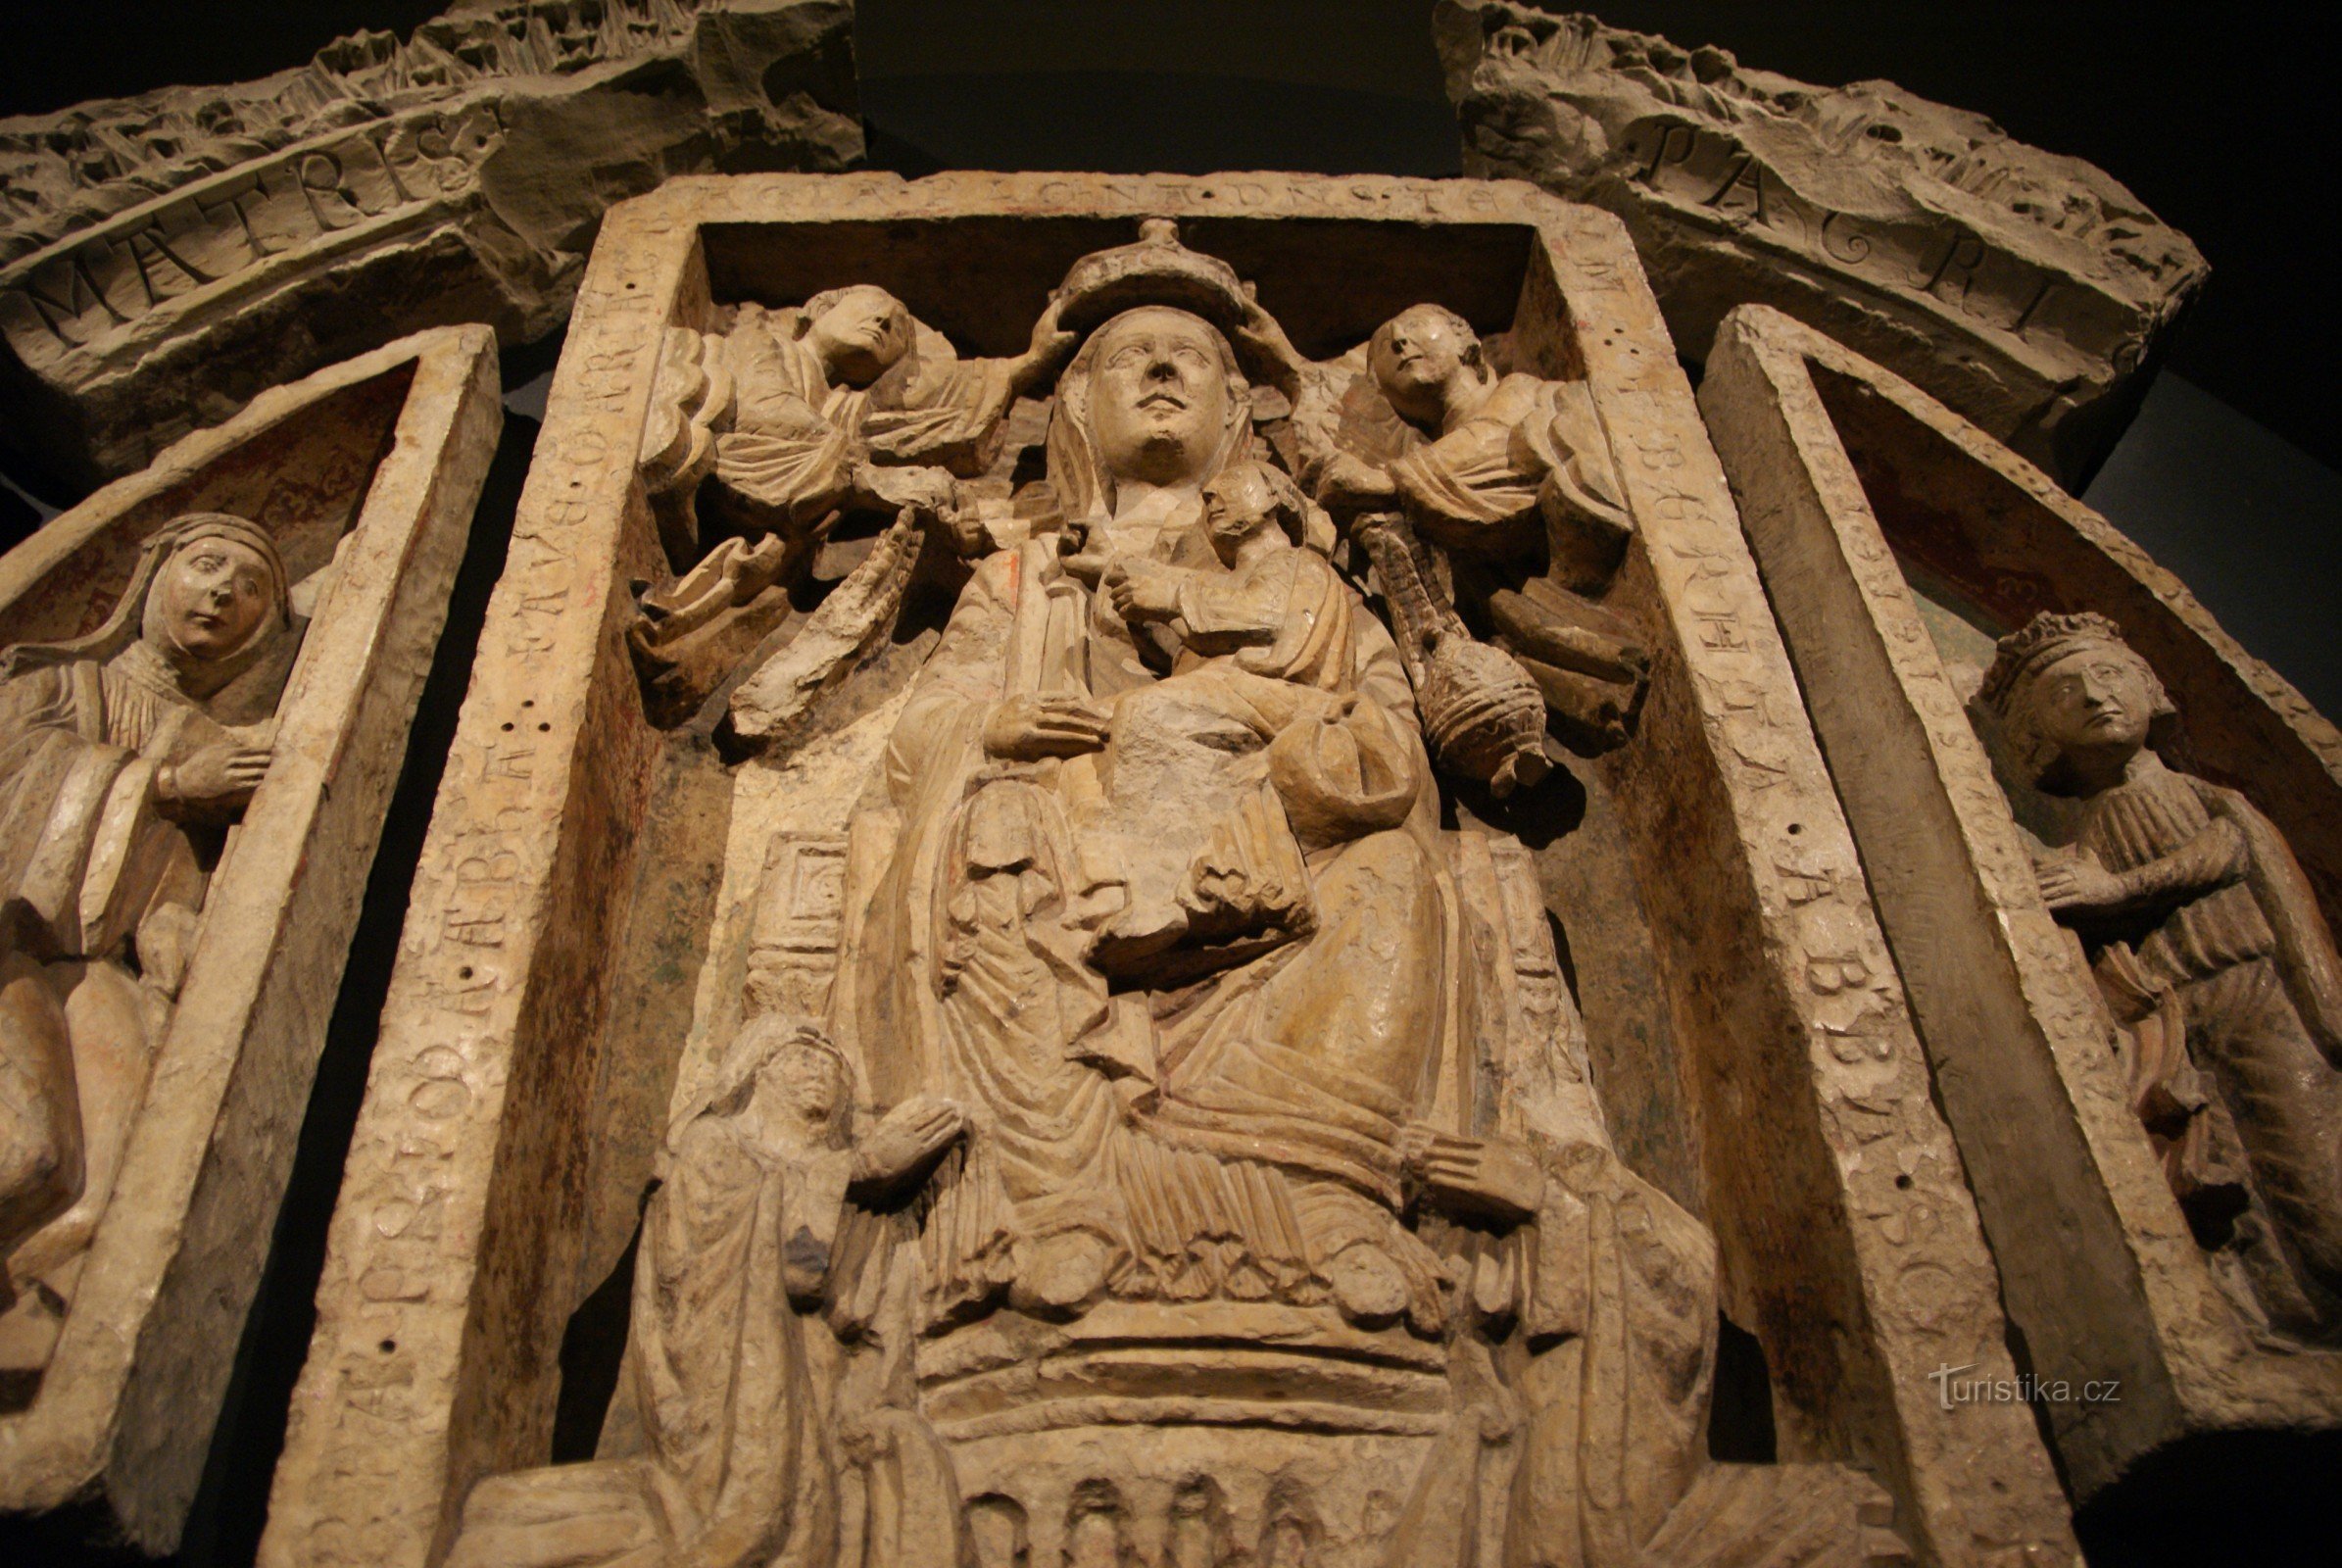 St. George's portal